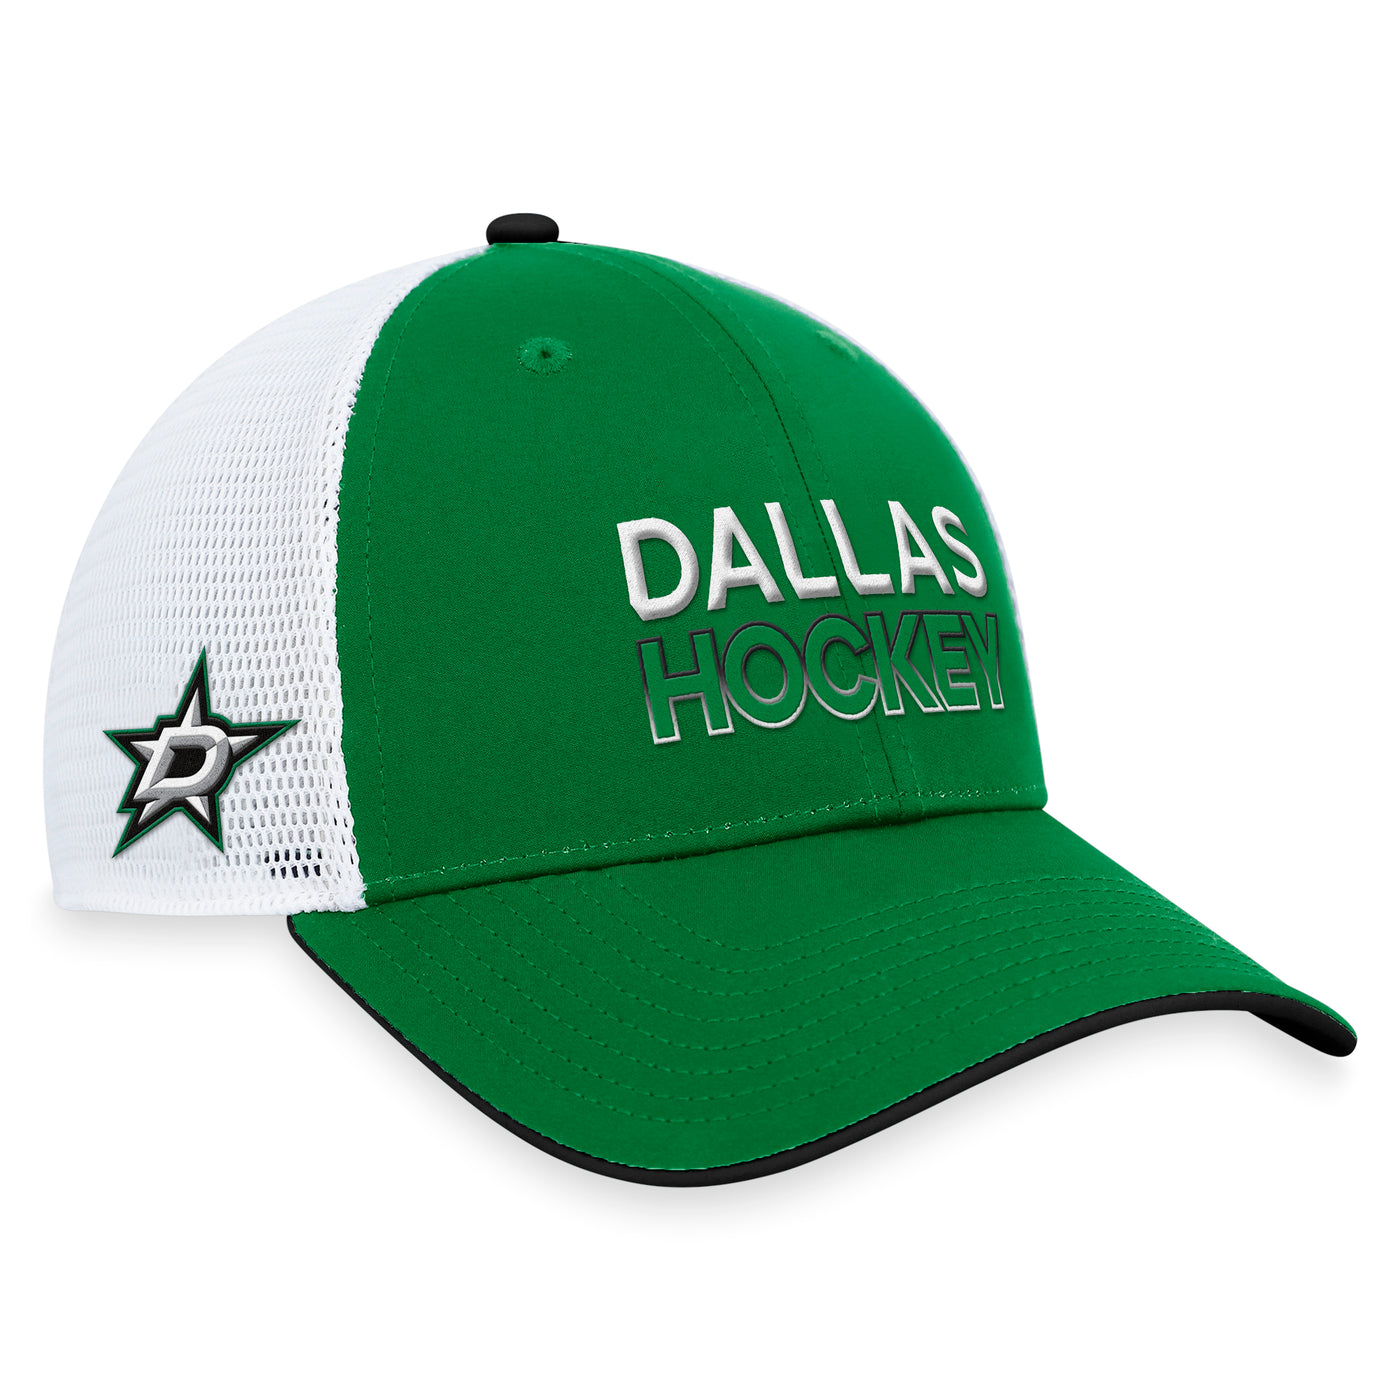 DALLAS STARS FANATICS STRUCTURED TRUCKER CAP GREEN - RIGHT SIDE VIEW